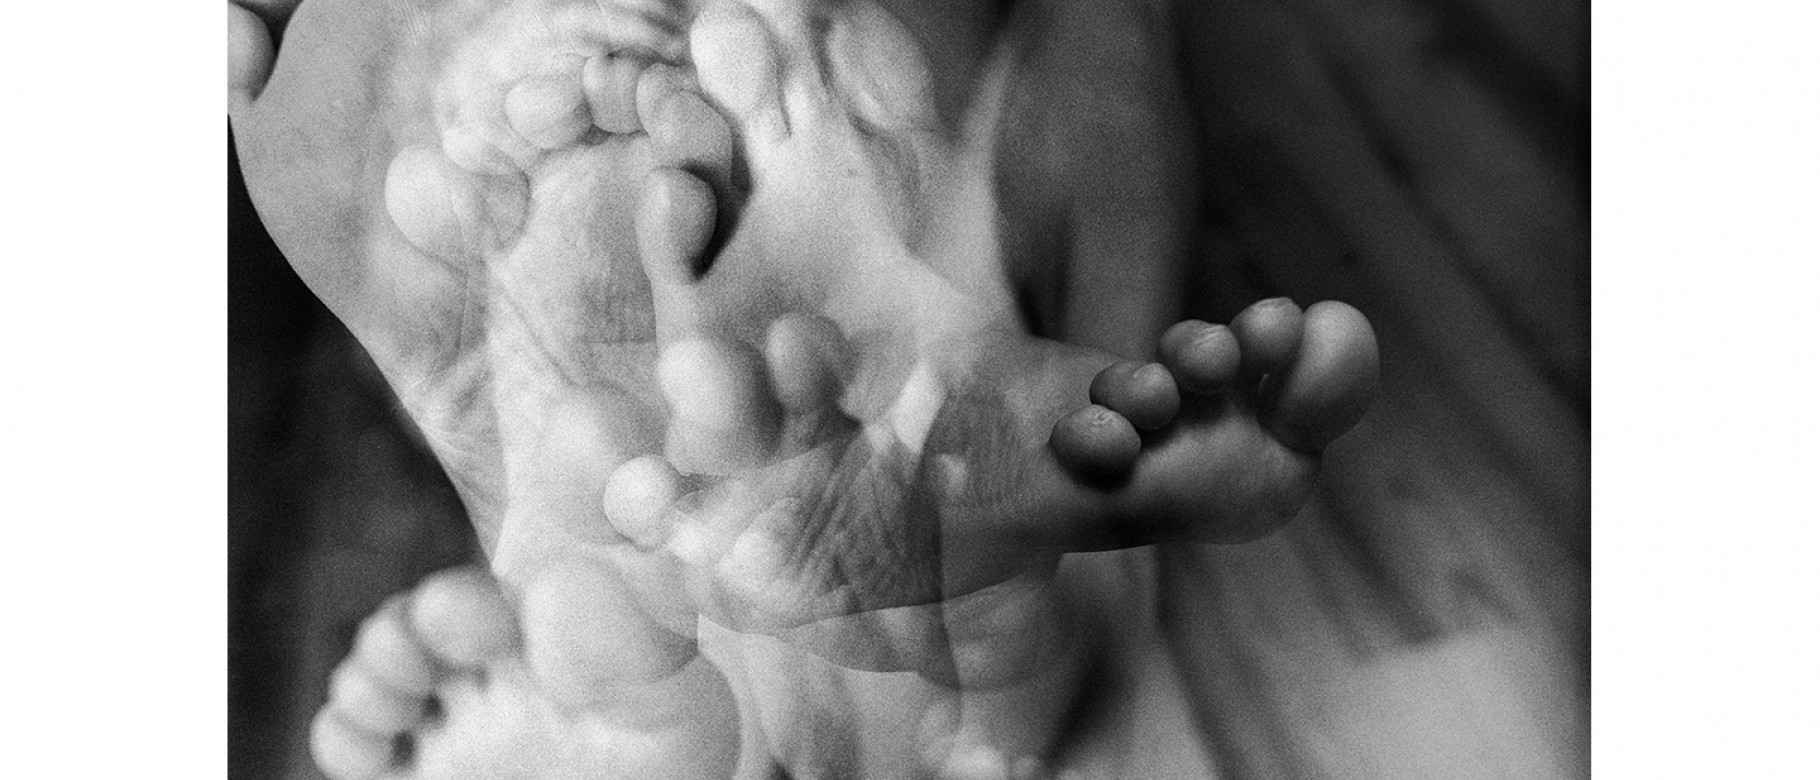 "Foot" by Joseph Della Valle